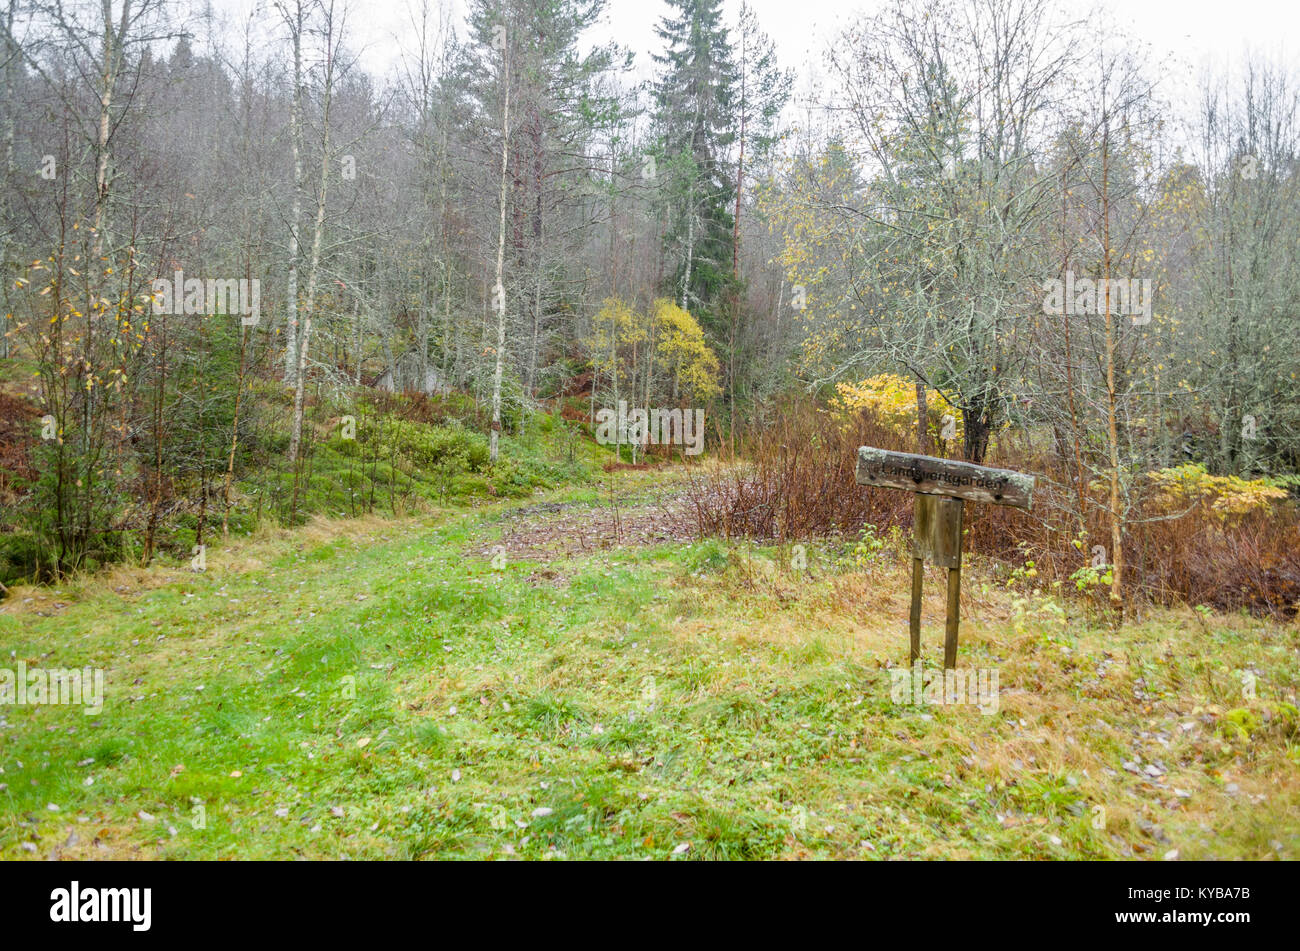 Landsverk 3, Evje Mineralsti. A finales de otoño no hay hojas y reliquias son visibles en el bosque, por lo que es la mejor época para visitar este lugar. Foto de stock